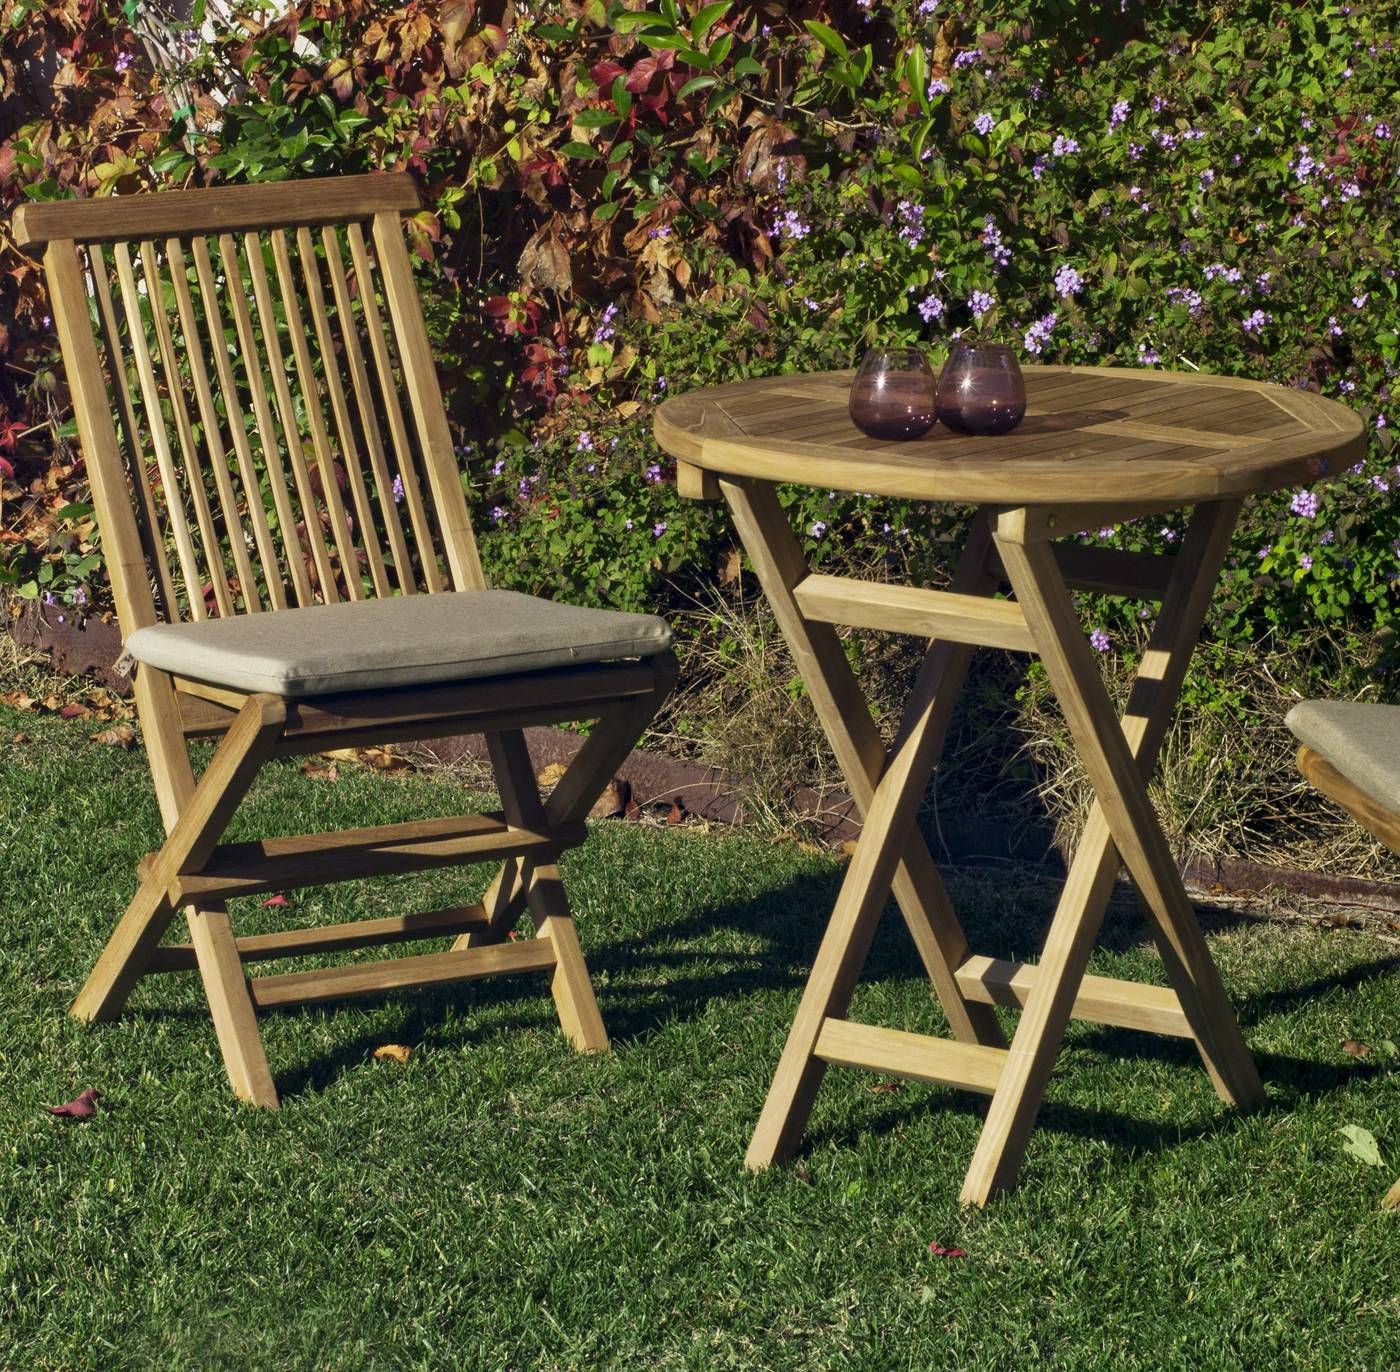 Conjunto Teka Seroni 70-2 - Conjunto de madera de teka: 1 mesa redonda plegable 70 cm. + 2 sillas con cojines asiento